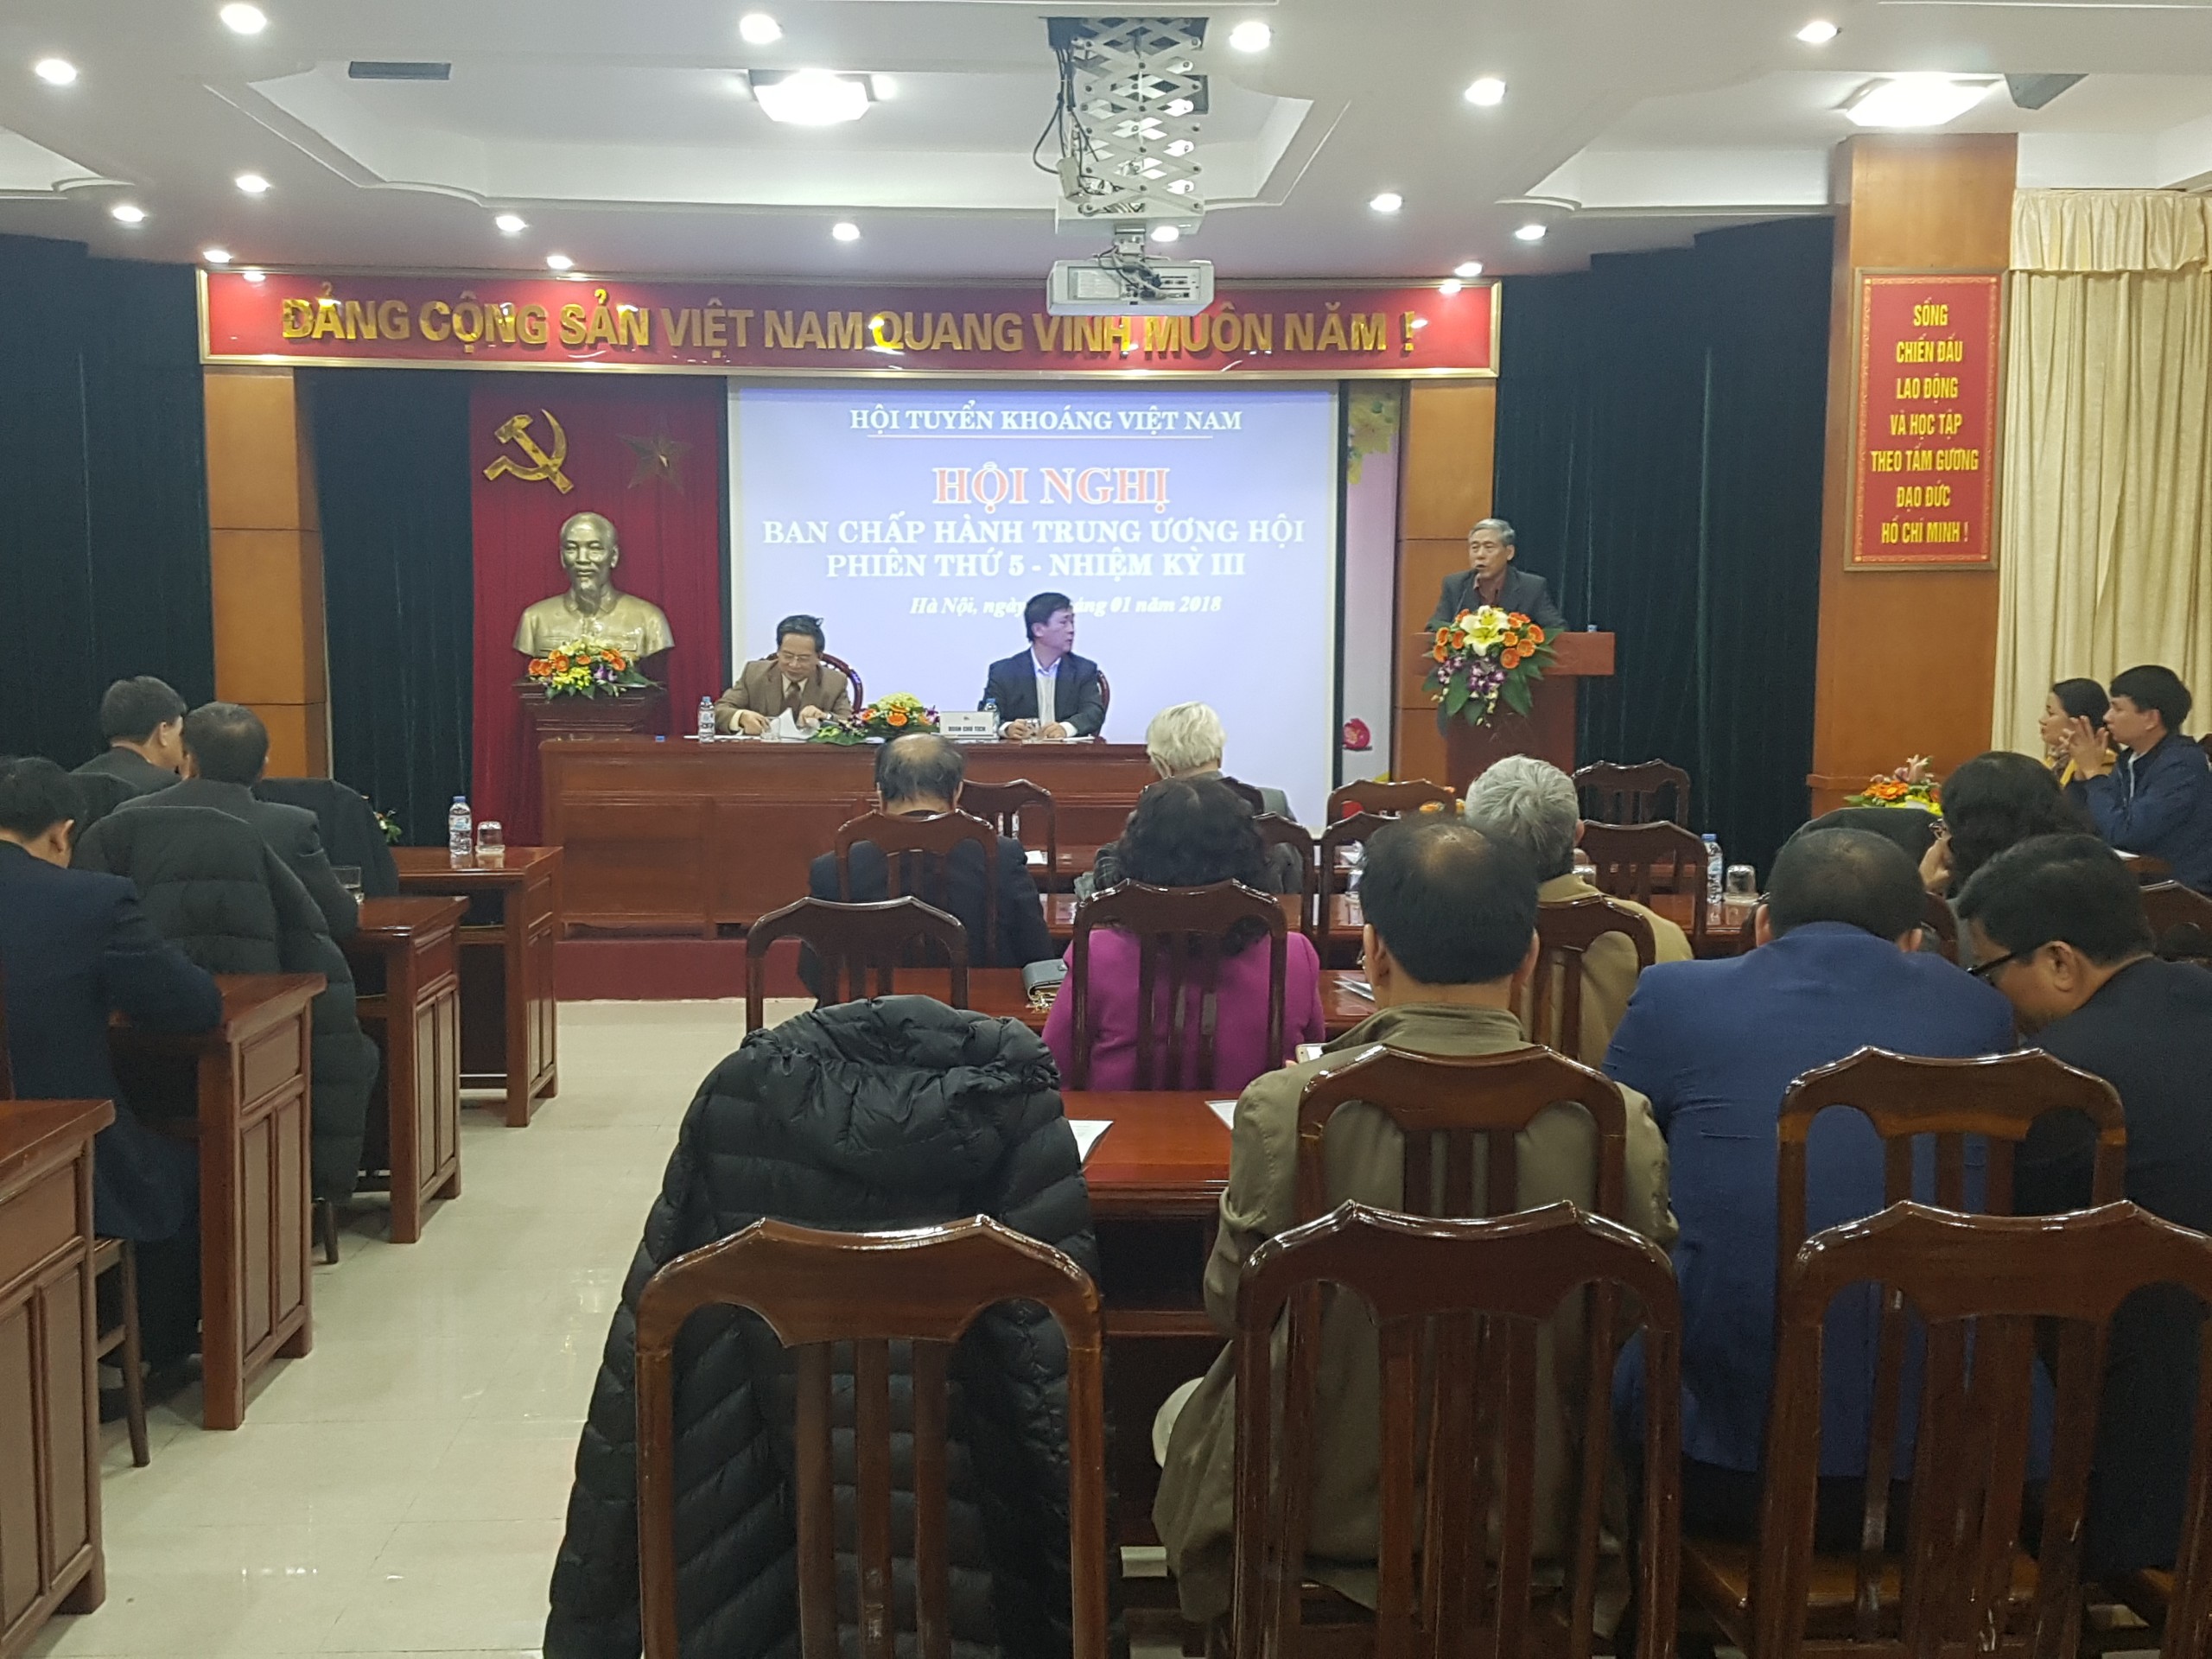 Hội nghị Ban Chấp hành phiên họp thứ 5 nhiệm kỳ III - Hội Tuyển khoáng Việt Nam